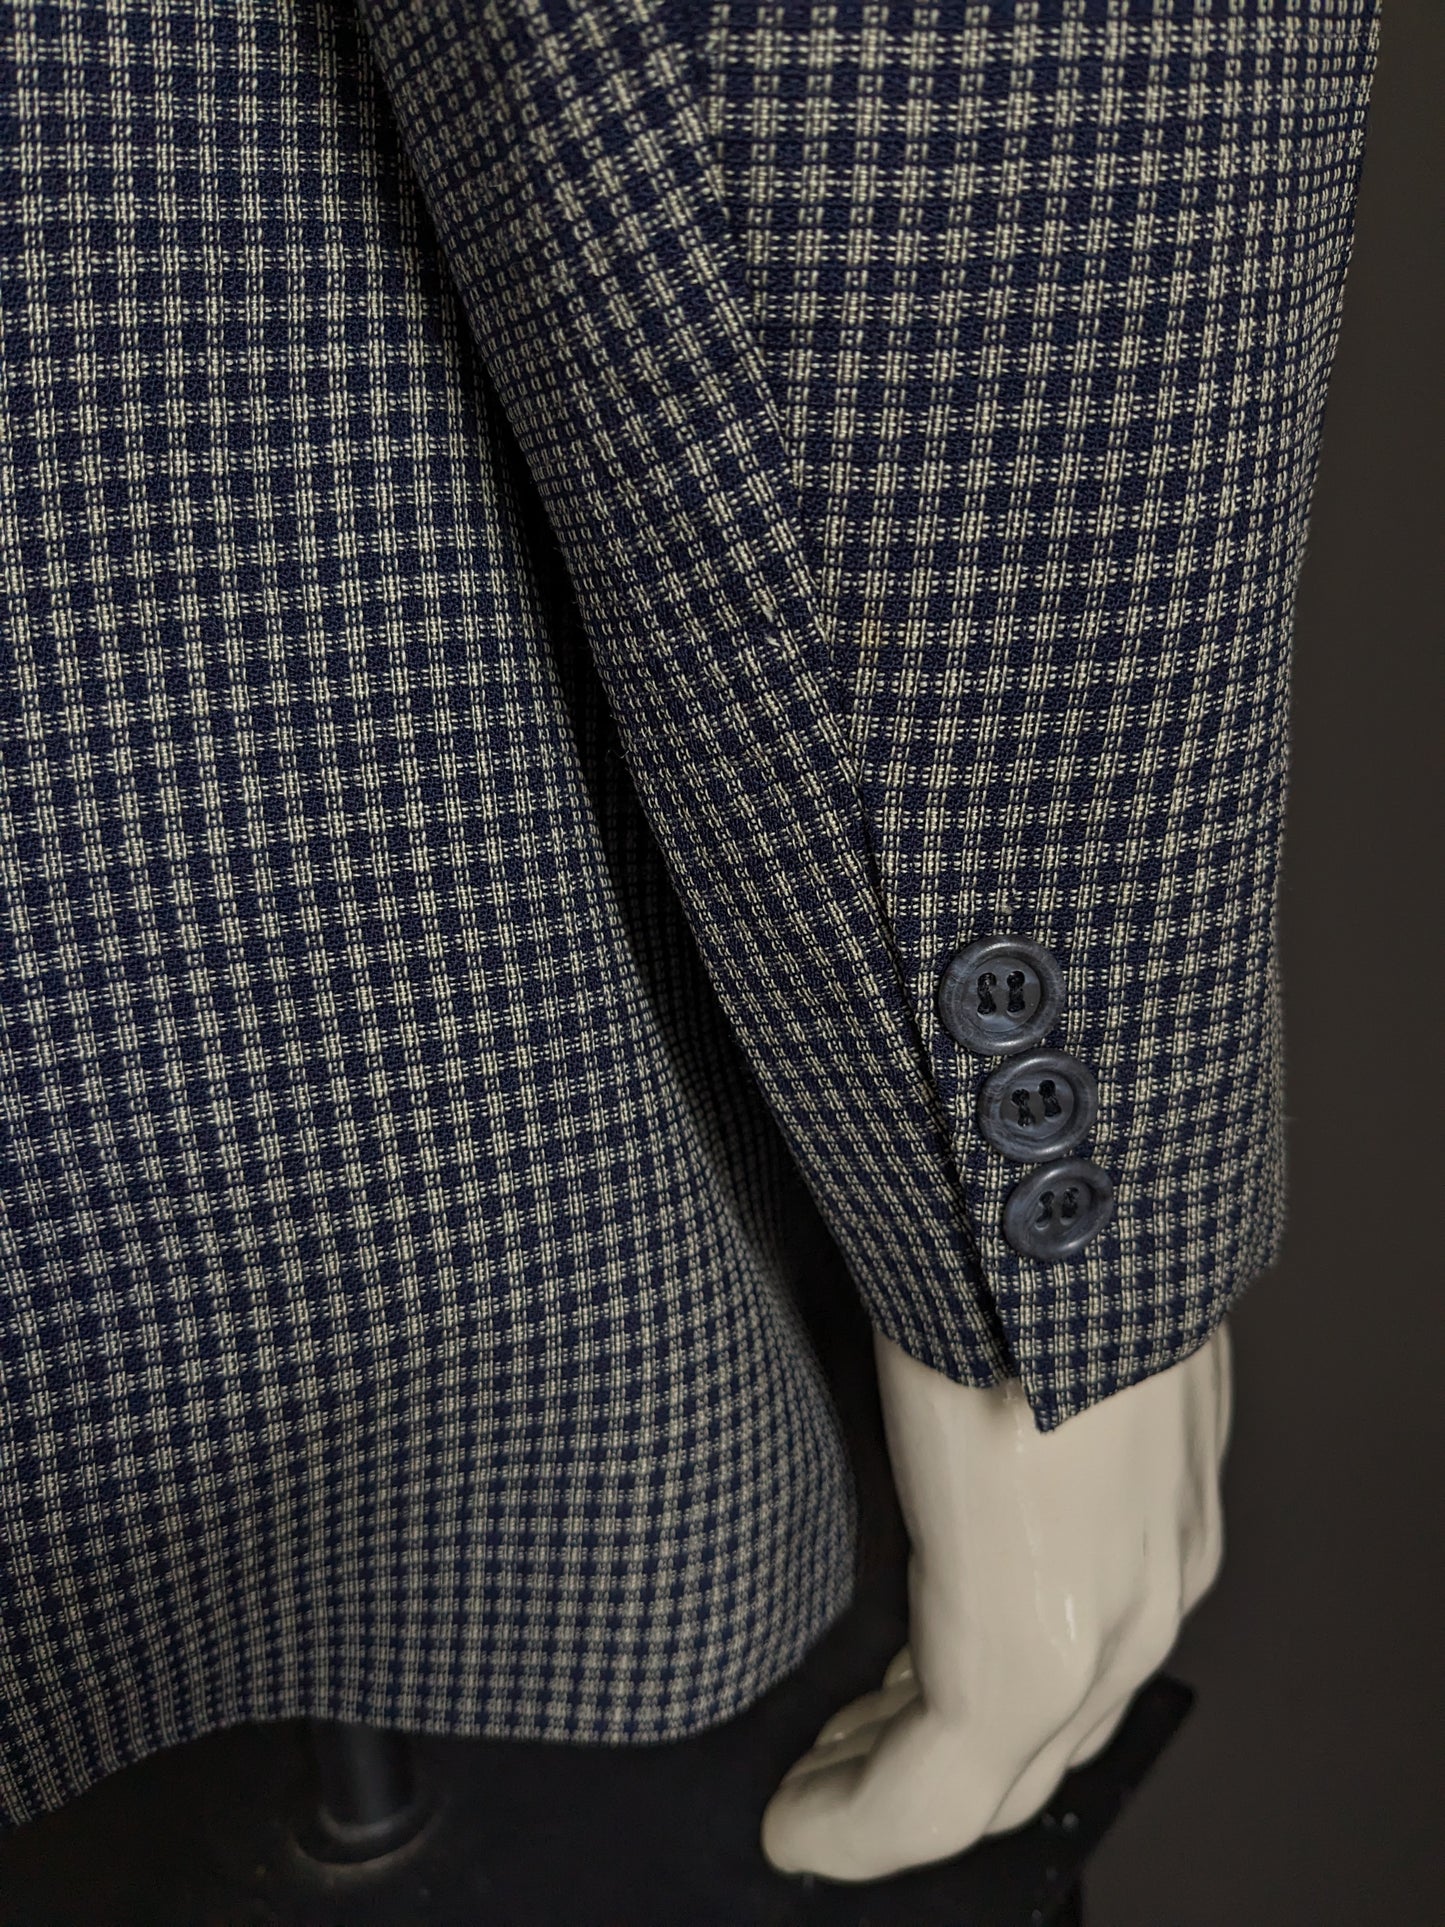 Van Gils chaqueta de lana de doble pecho vintage con inversiones de puntos. Blue gris revisado. Tamaño 54 / L.